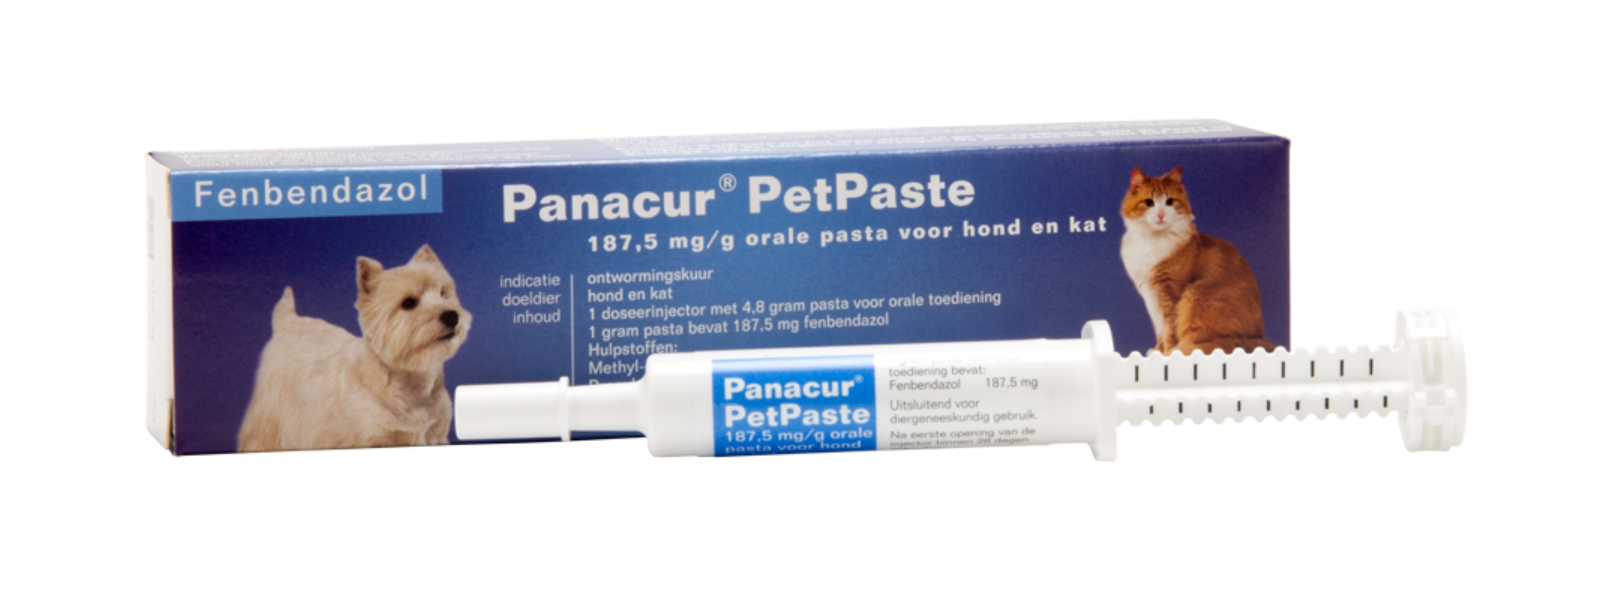 Panacur PetPaste